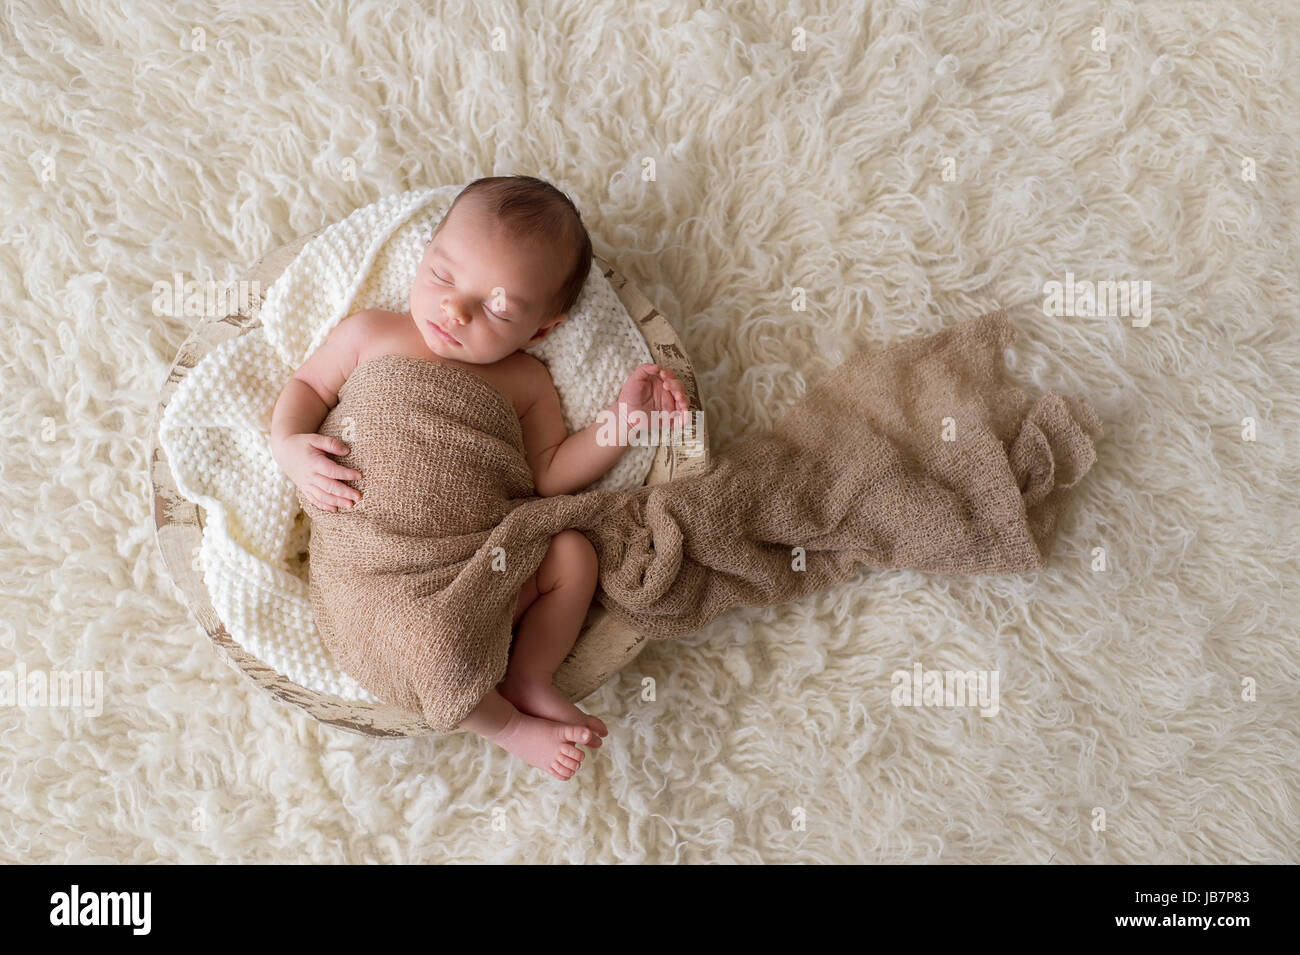 Zwei Wochen altes neugeborenes Baby junge gepuckt in Beige wickeln und schlafen in einer runden, hölzernen, Graben-Schüssel. Gedreht im Studio auf einem Creme farbigen Flokati ru Stockfoto